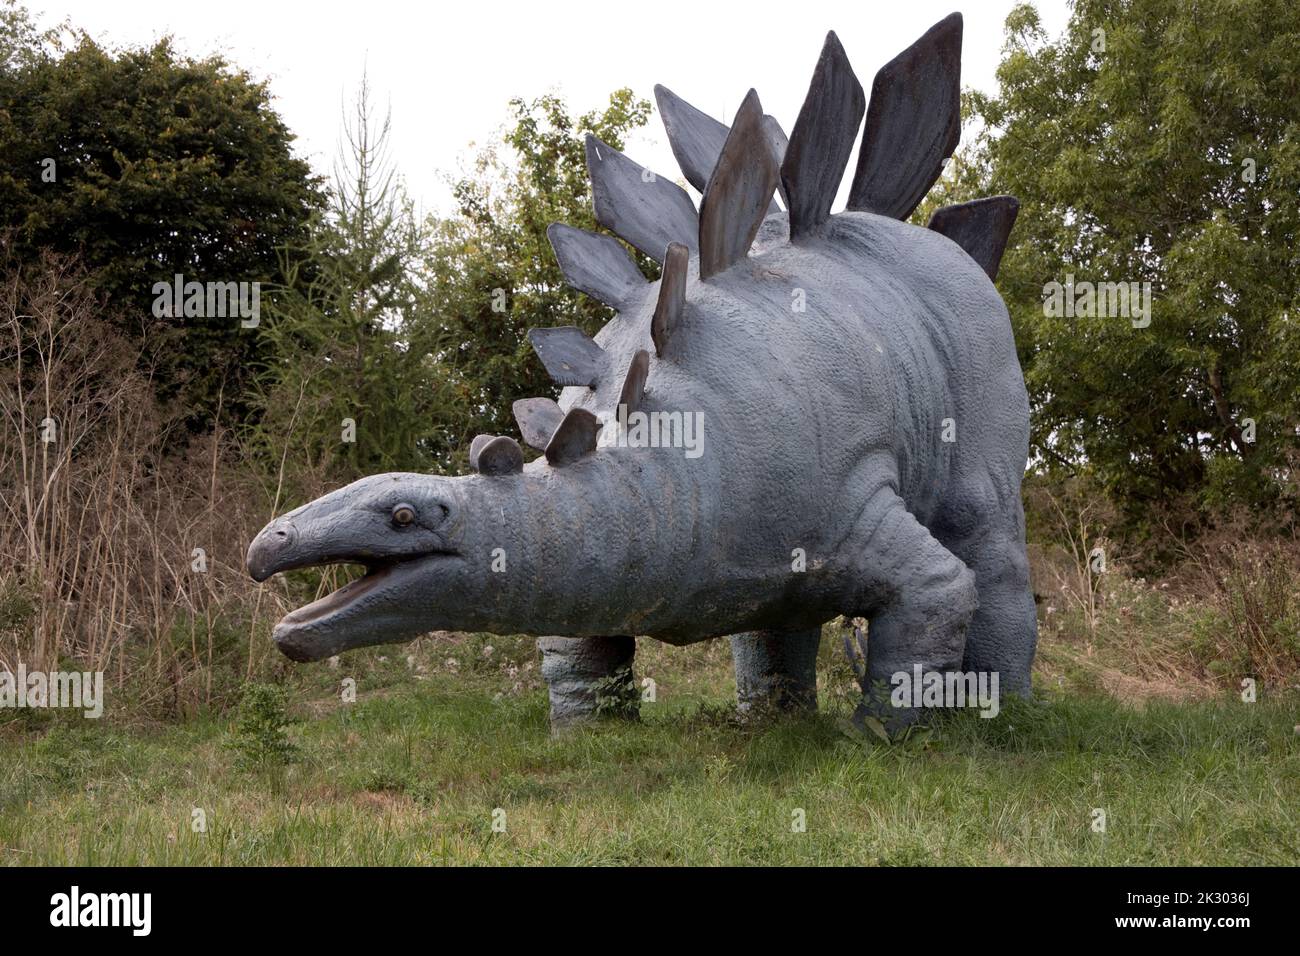 Modello LifeSize di Stegosaurus un dinosauro erbivoro, a quattro zampe, corazzato del tardo Jurassicd, All Things Wild, Honeybourne, UK Foto Stock